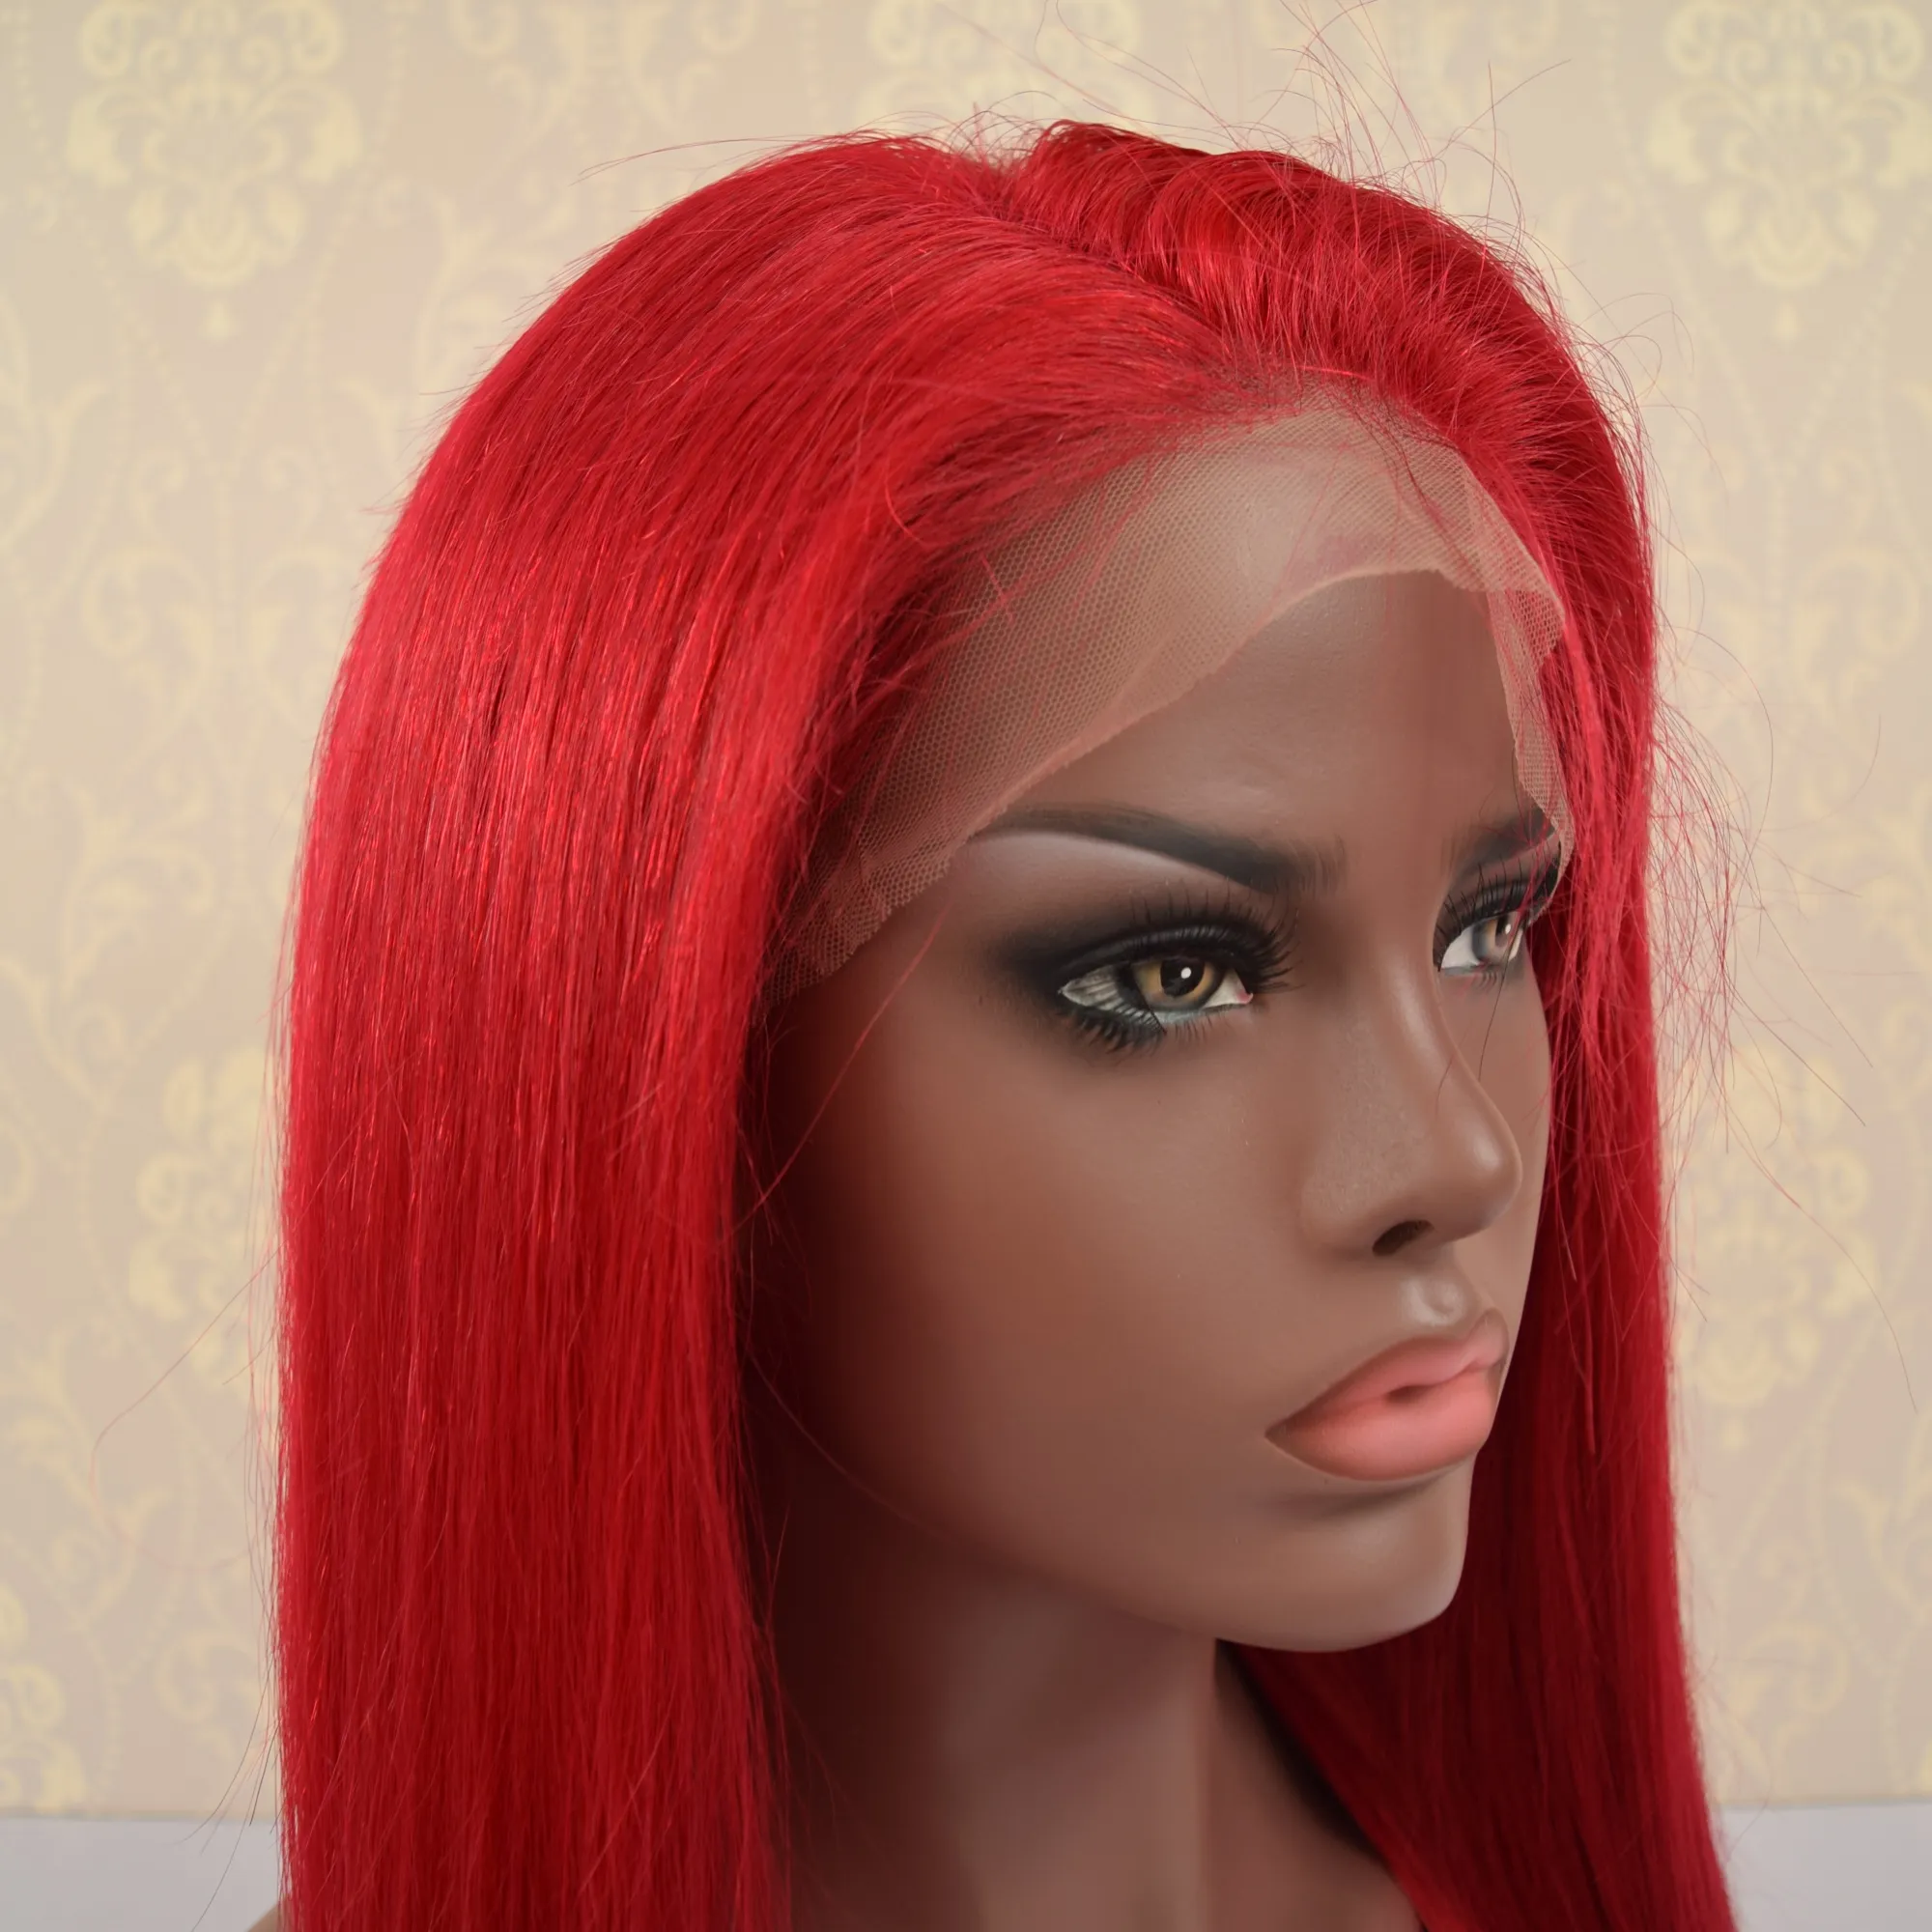 Peluang Distributor Grosir Wig Renda Penuh Rambut Manusia Warna Merah, Harga Grosir Wig Depan Renda Rambut Manusia Brasil